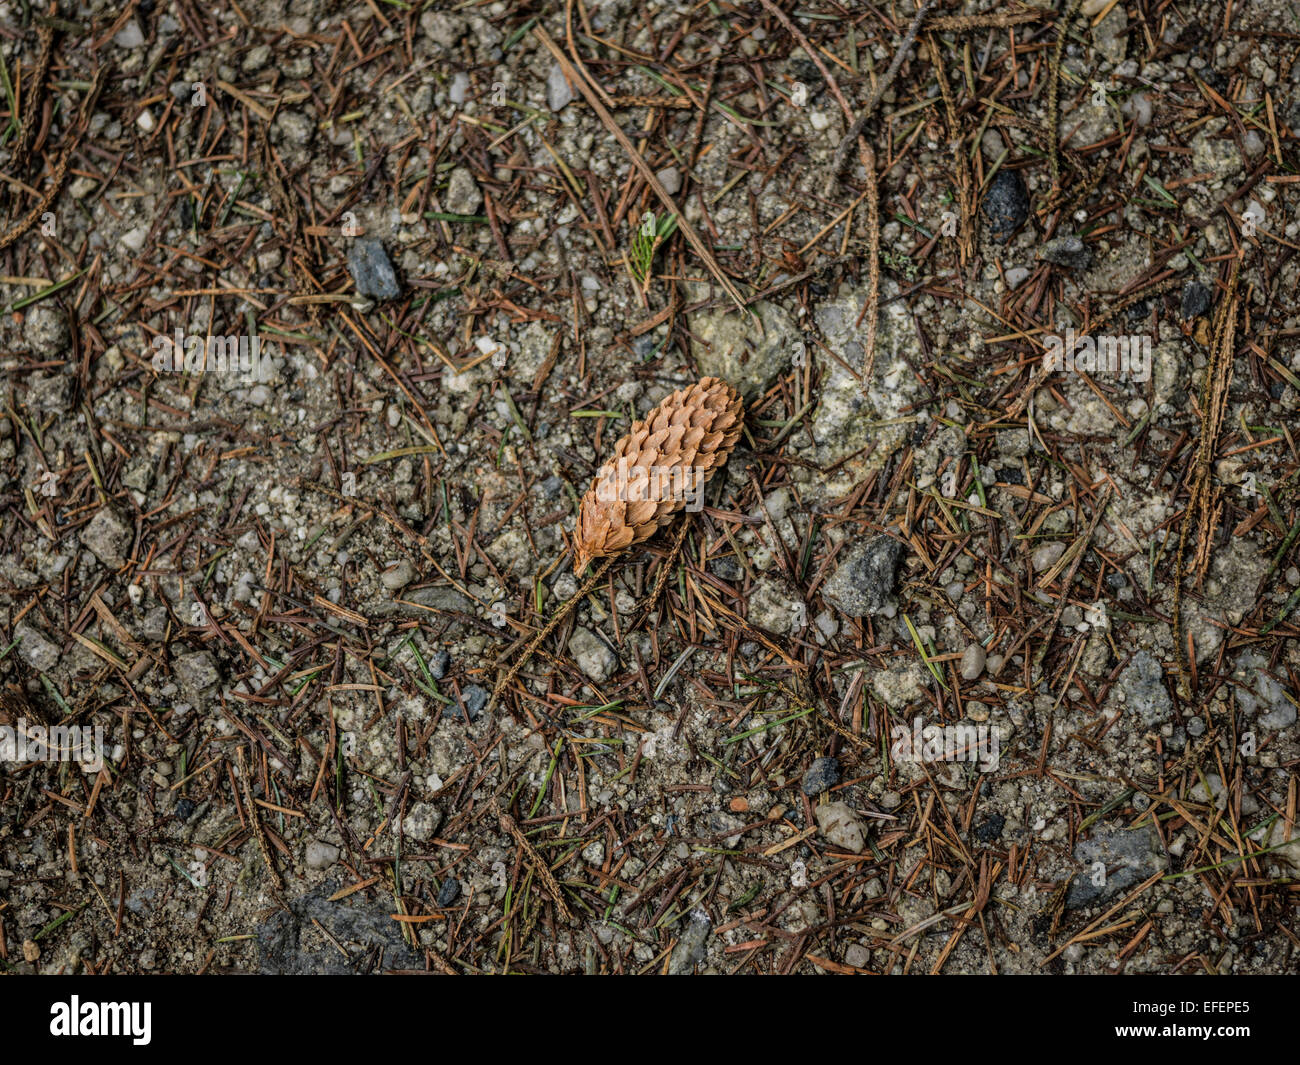 A pine cone. Stock Photo